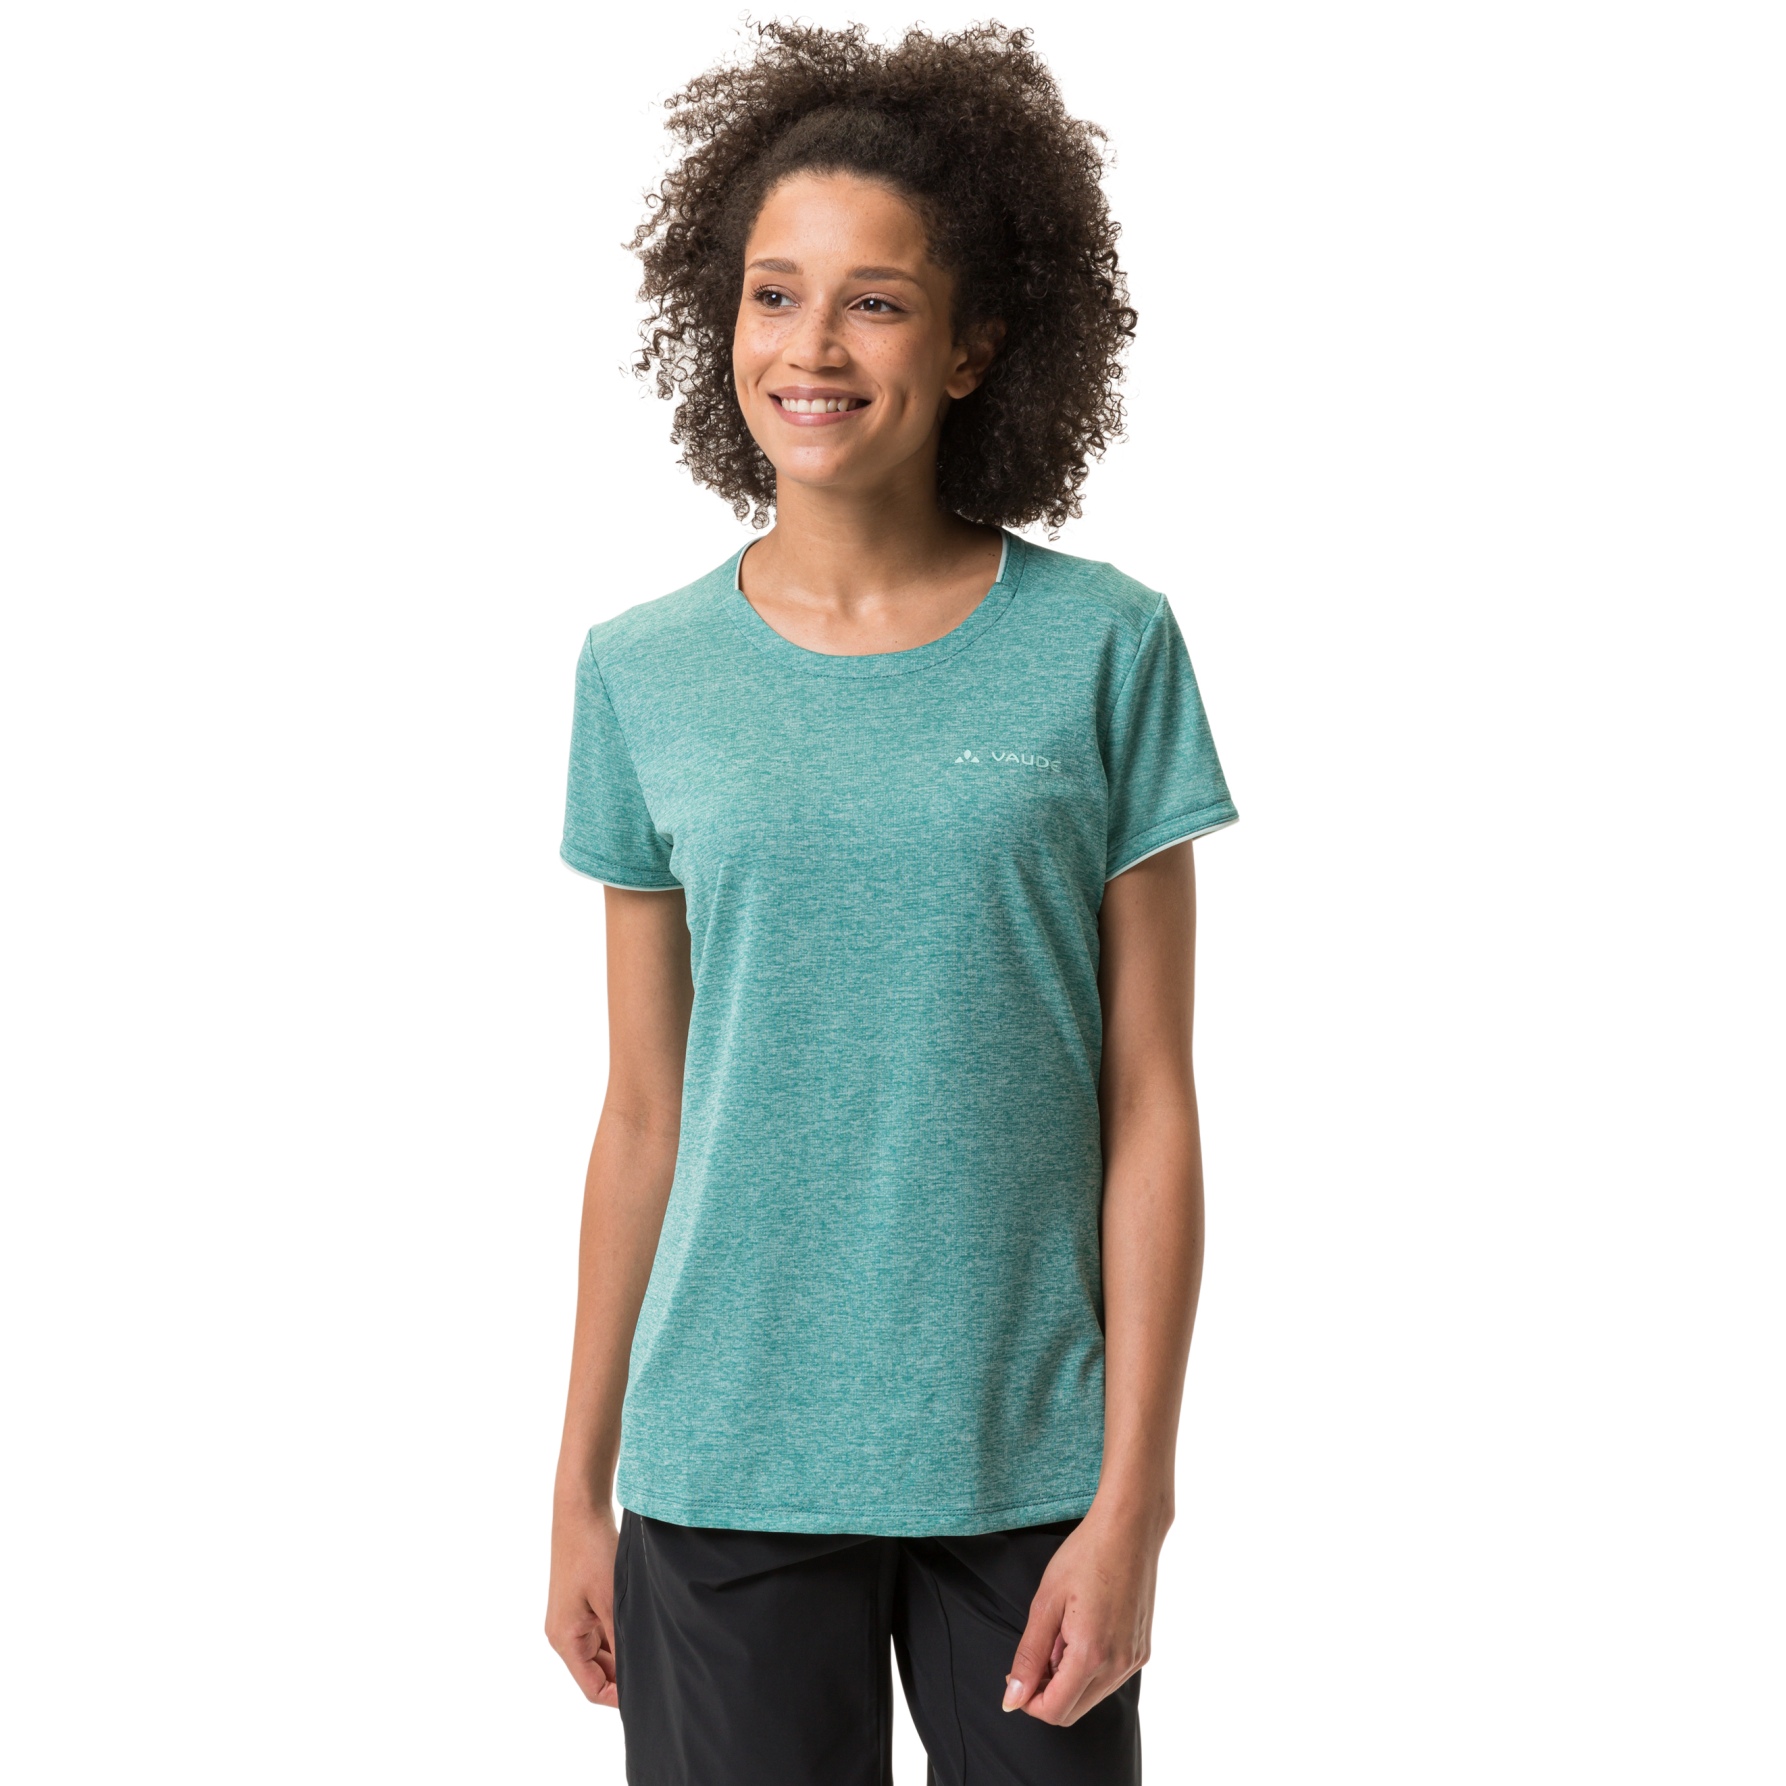 Produktbild von Vaude Essential Damen T-Shirt - wave